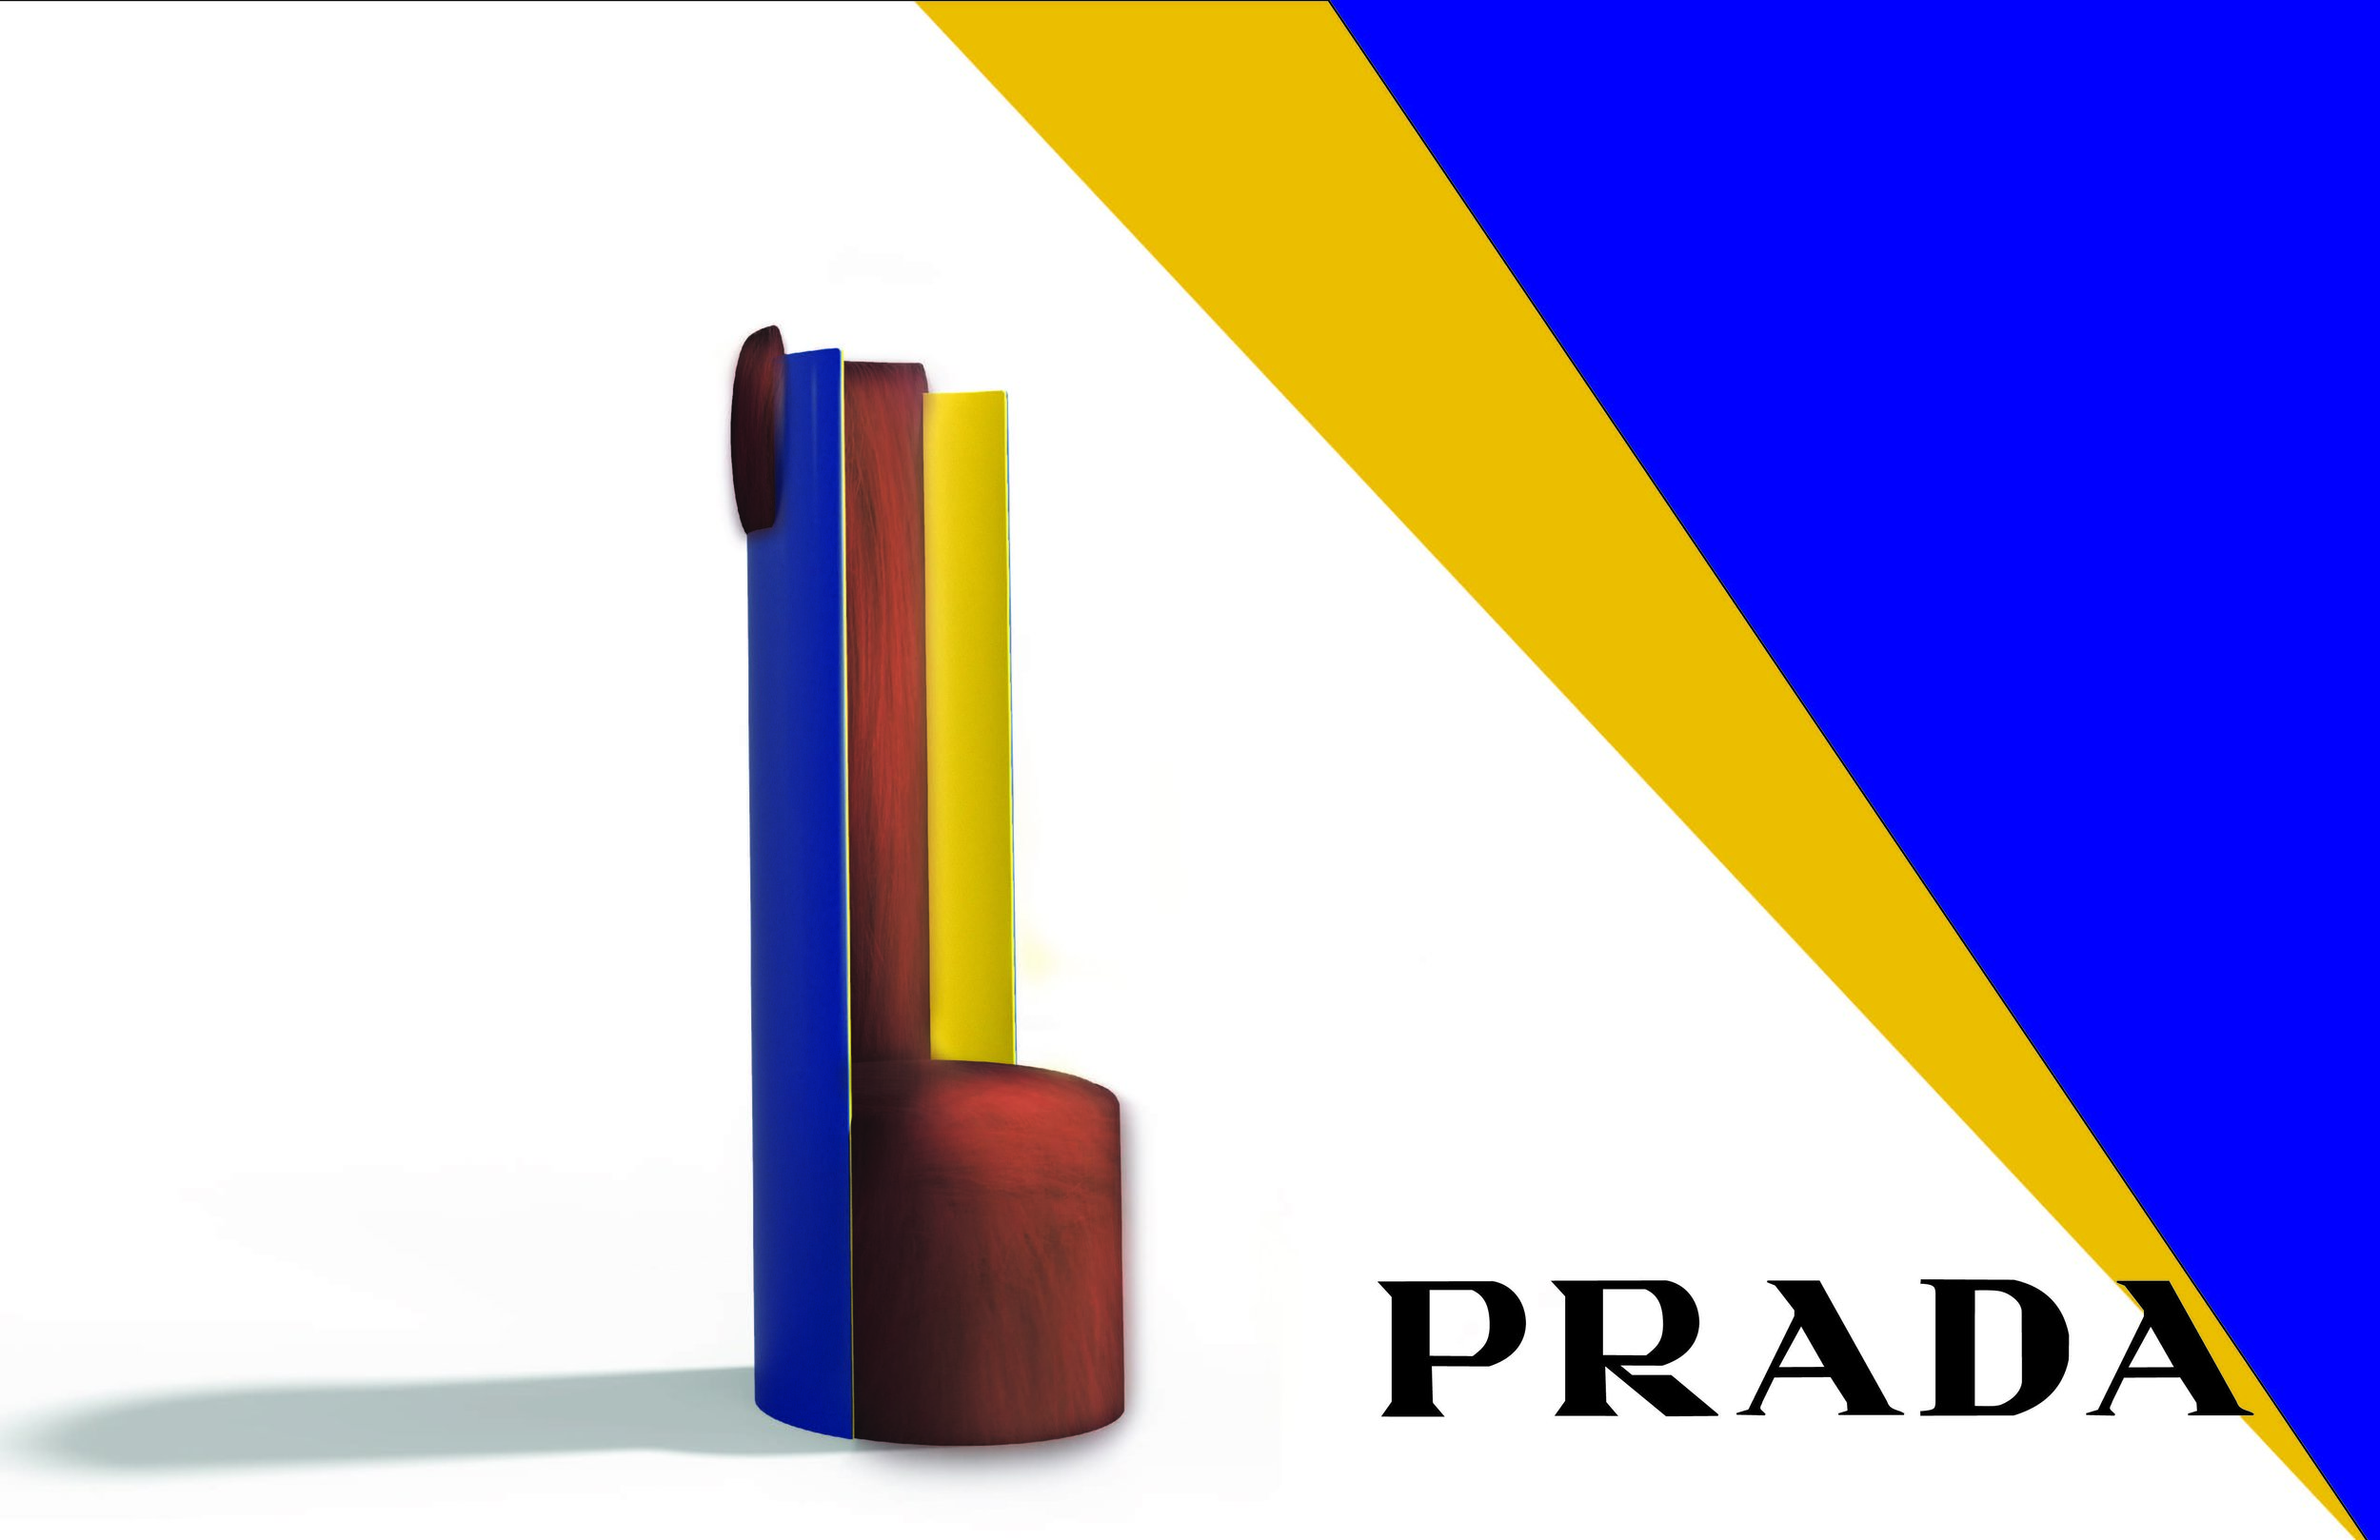 PRADA_Presentation_Page_04.jpg